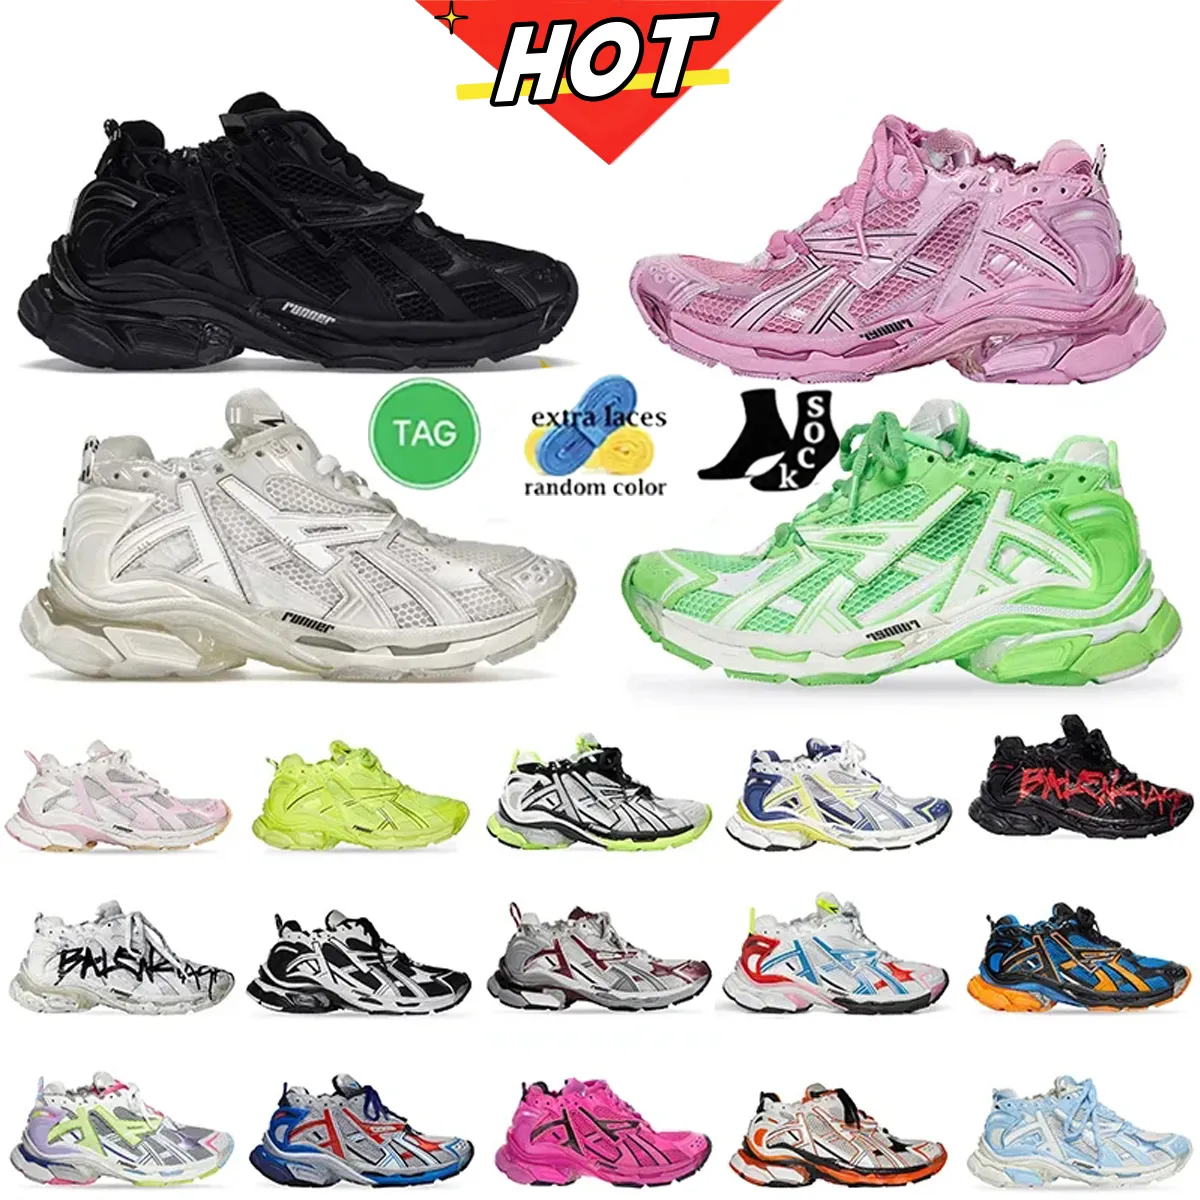 Shoes & Accessories - Dhgate.com